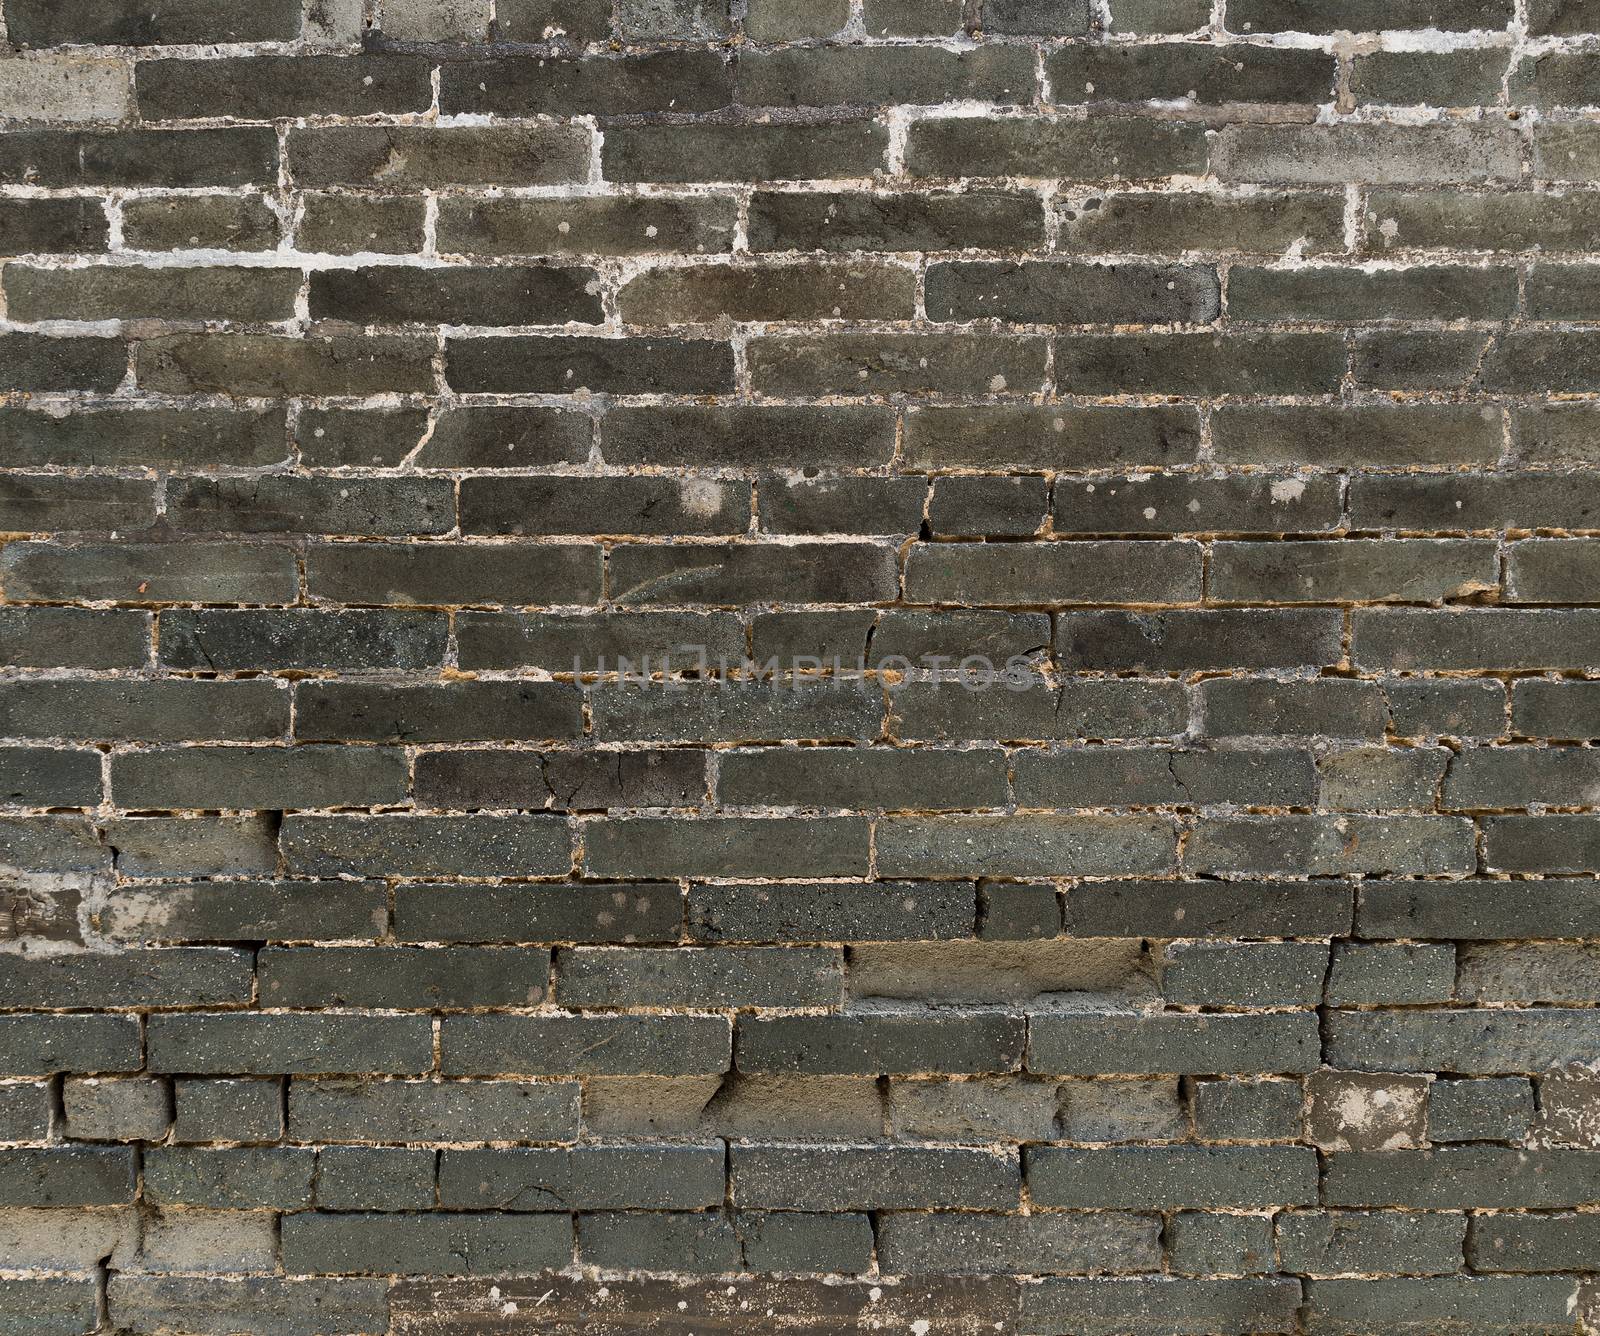 Brick wall by leungchopan